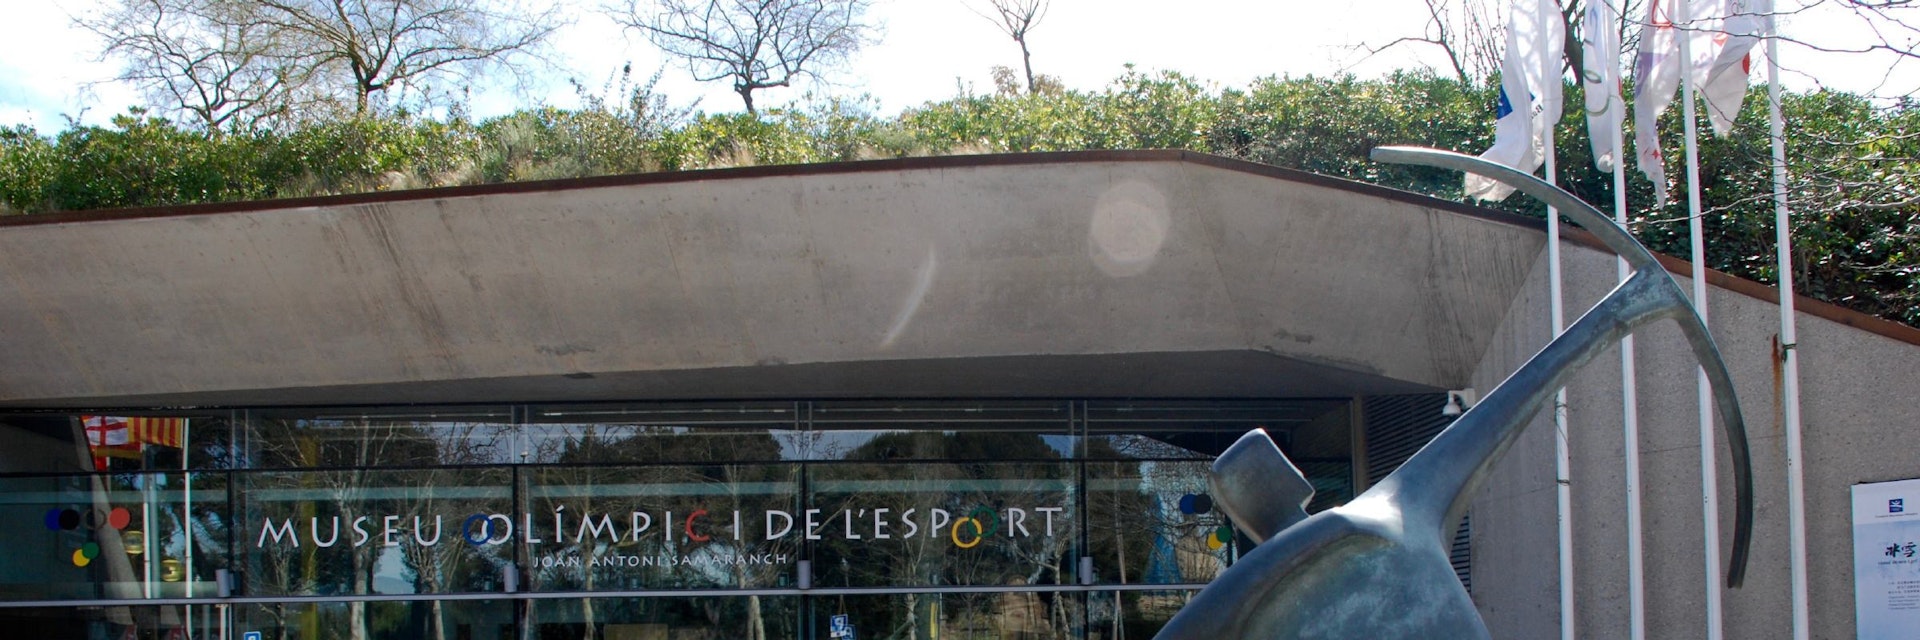 Exterior of Museu Olímpic i de l'Esport